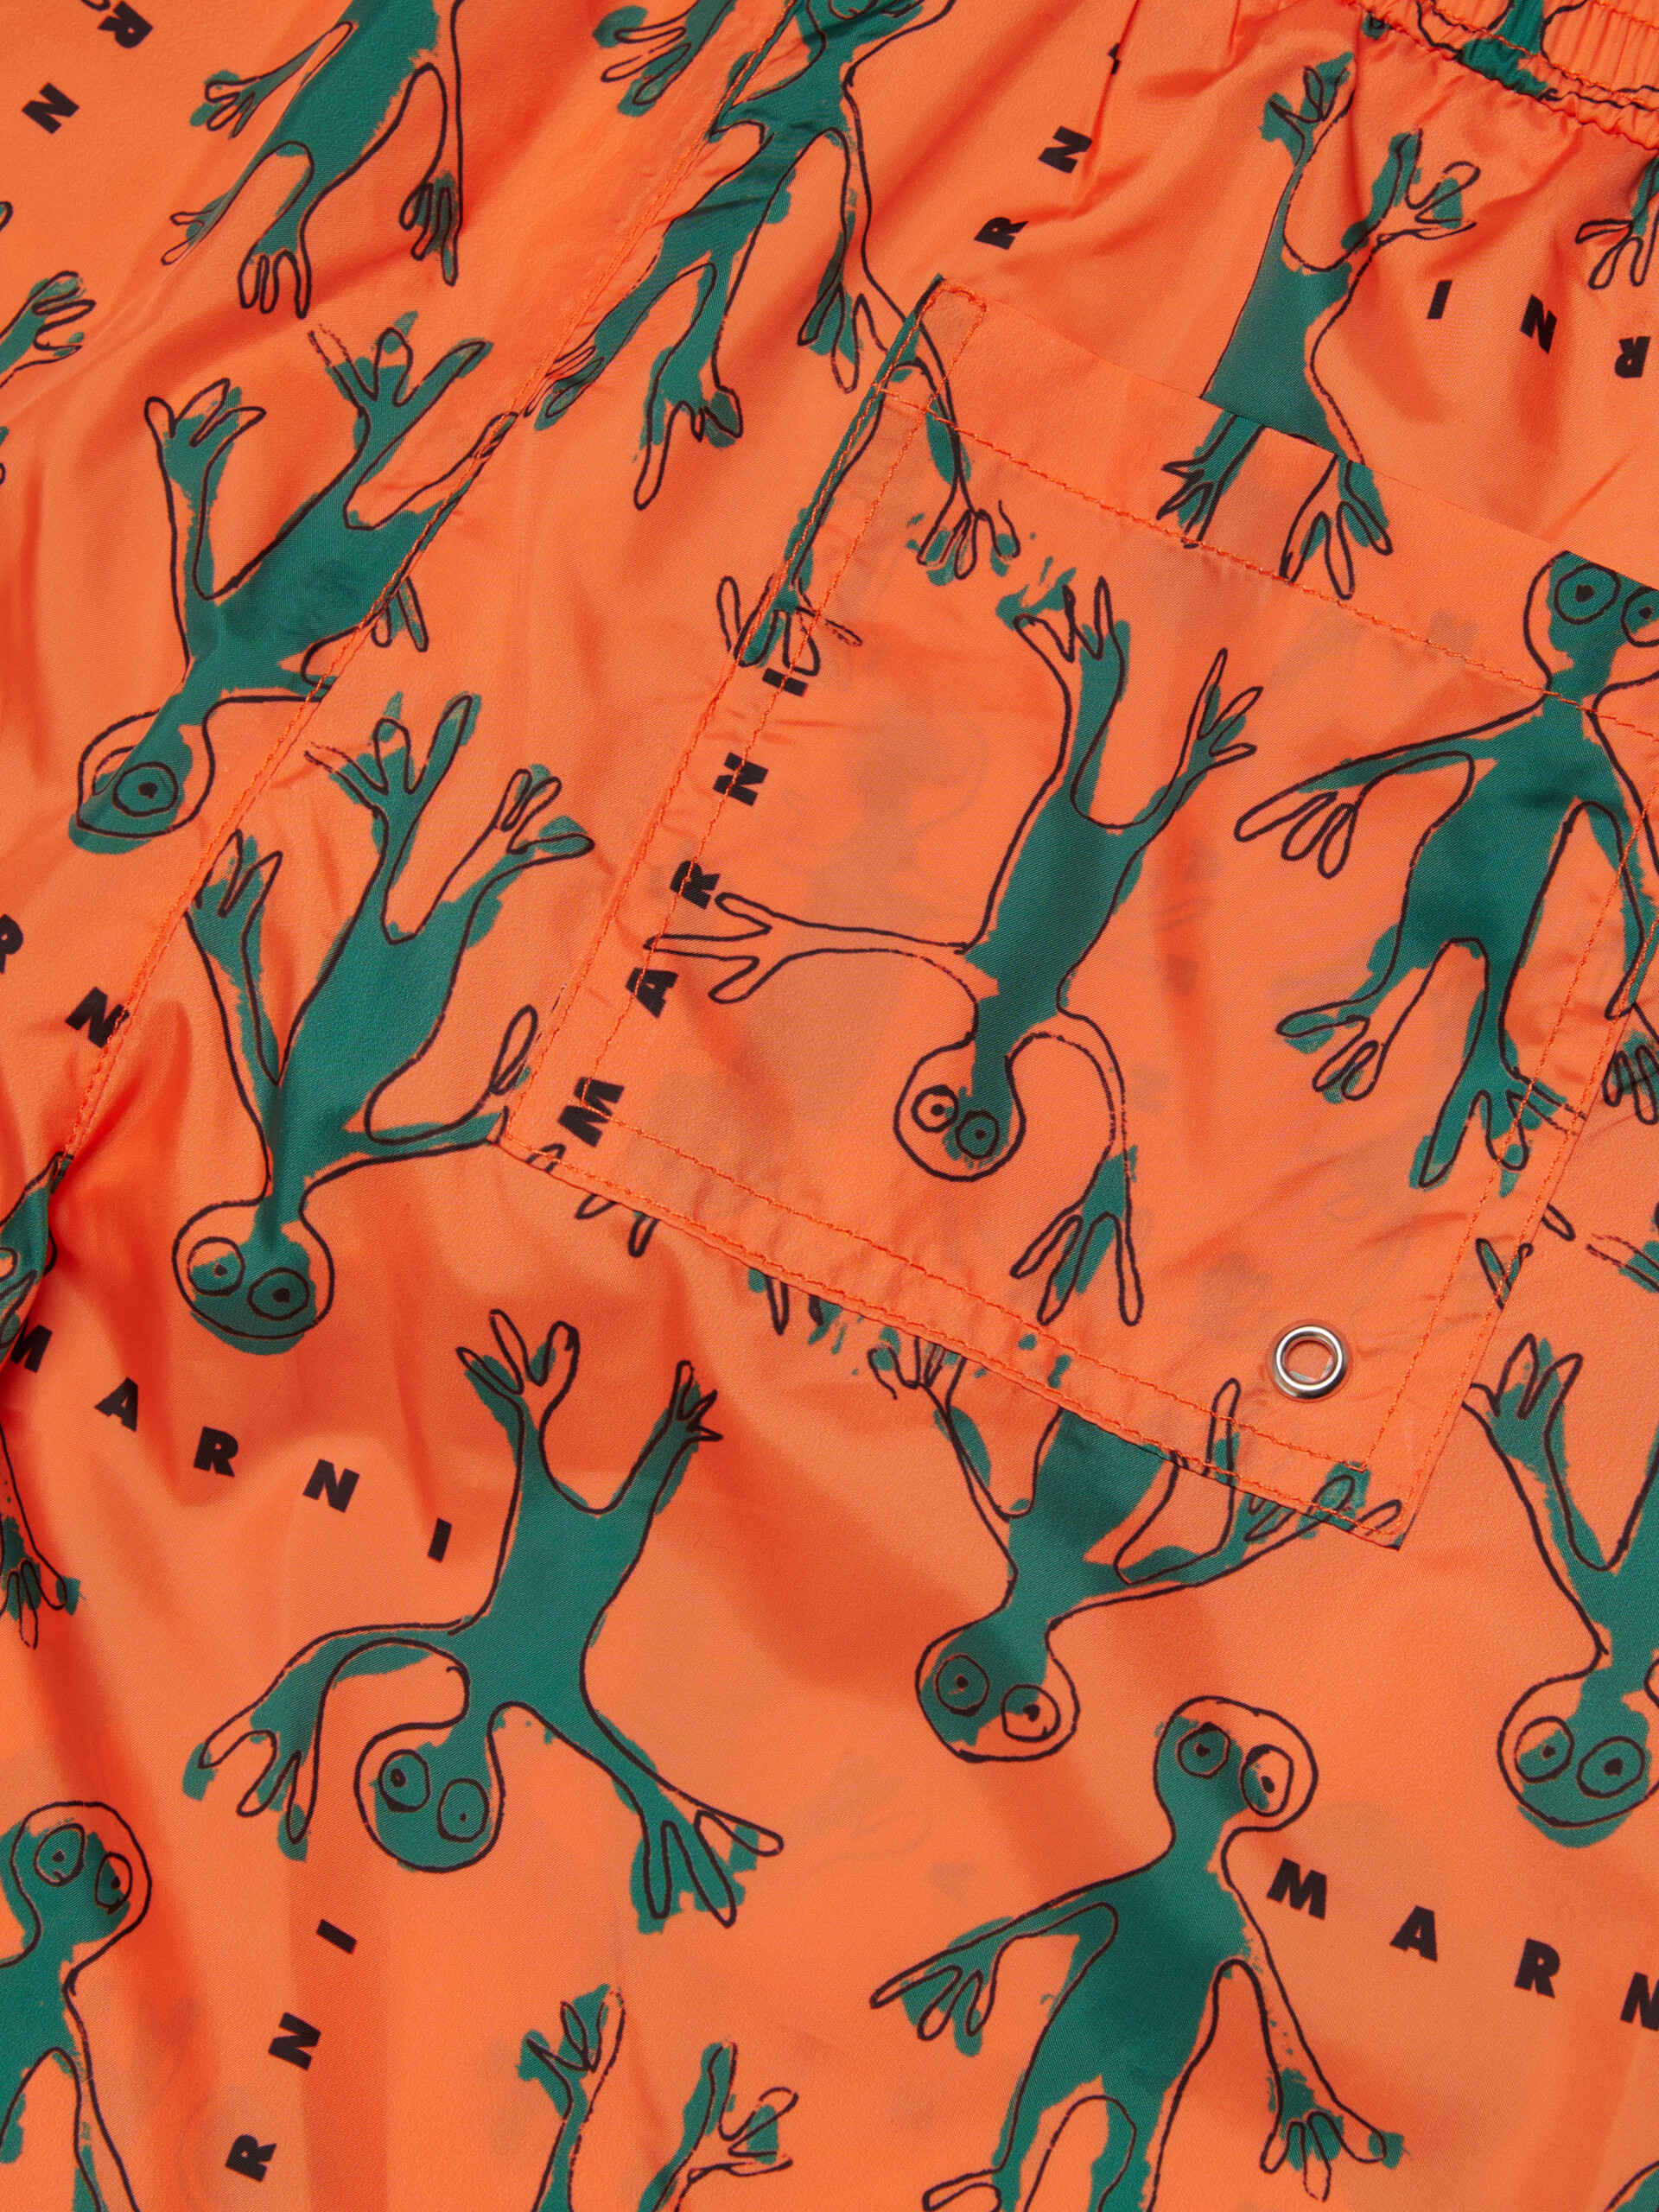 Bañador bóxer naranja con estampado Frog en toda la superficie - NIÑO - Image 4